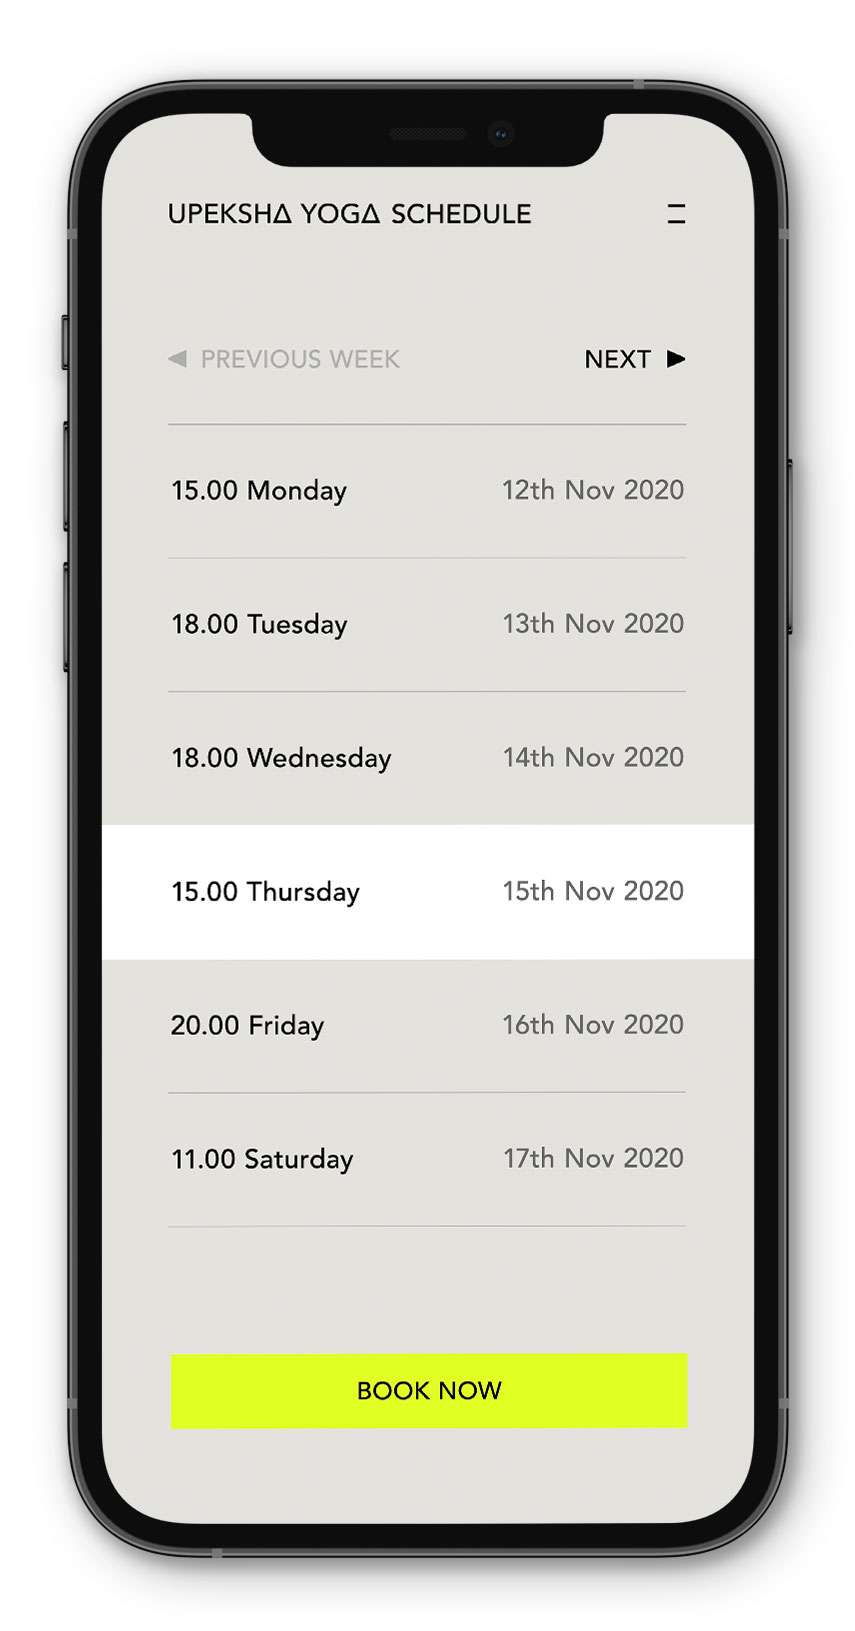 UY_Schedule_Mobile_NEW